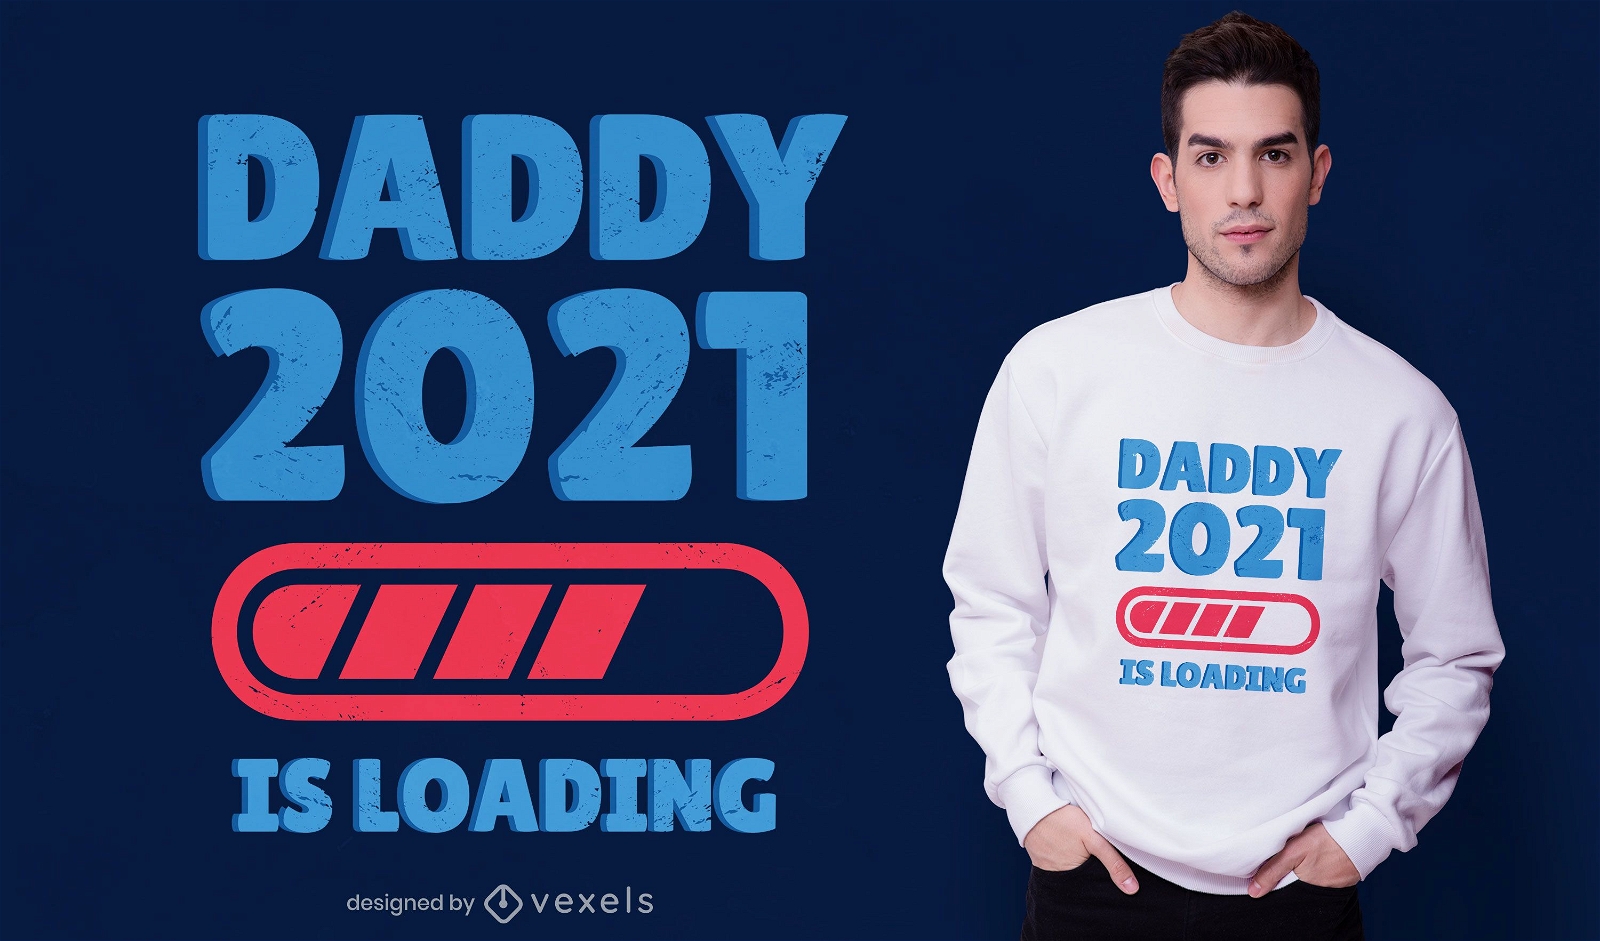 Dise?o de camiseta Daddy 2021